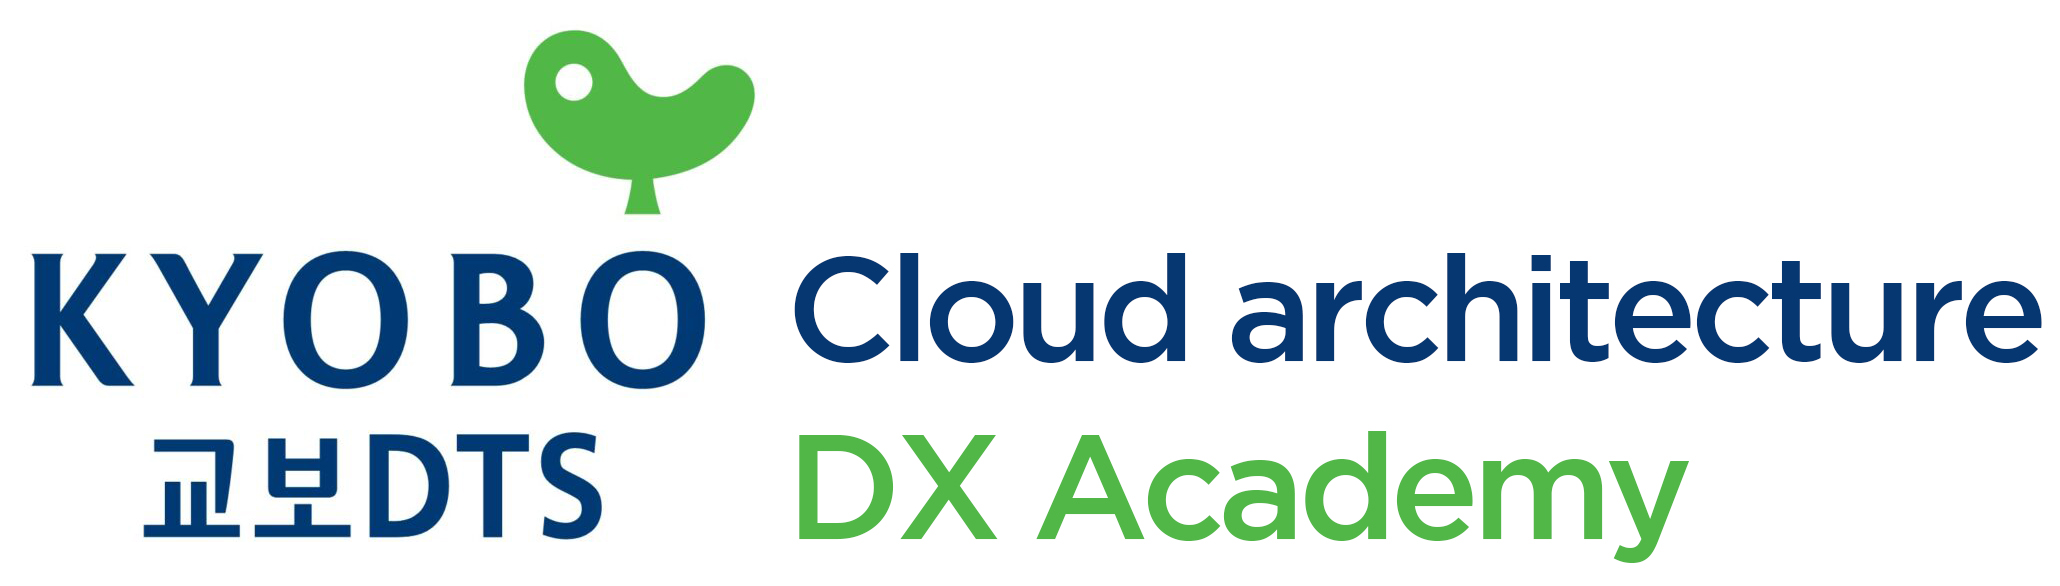 교보DTS-Cloud architecture DX Academy(CDA)